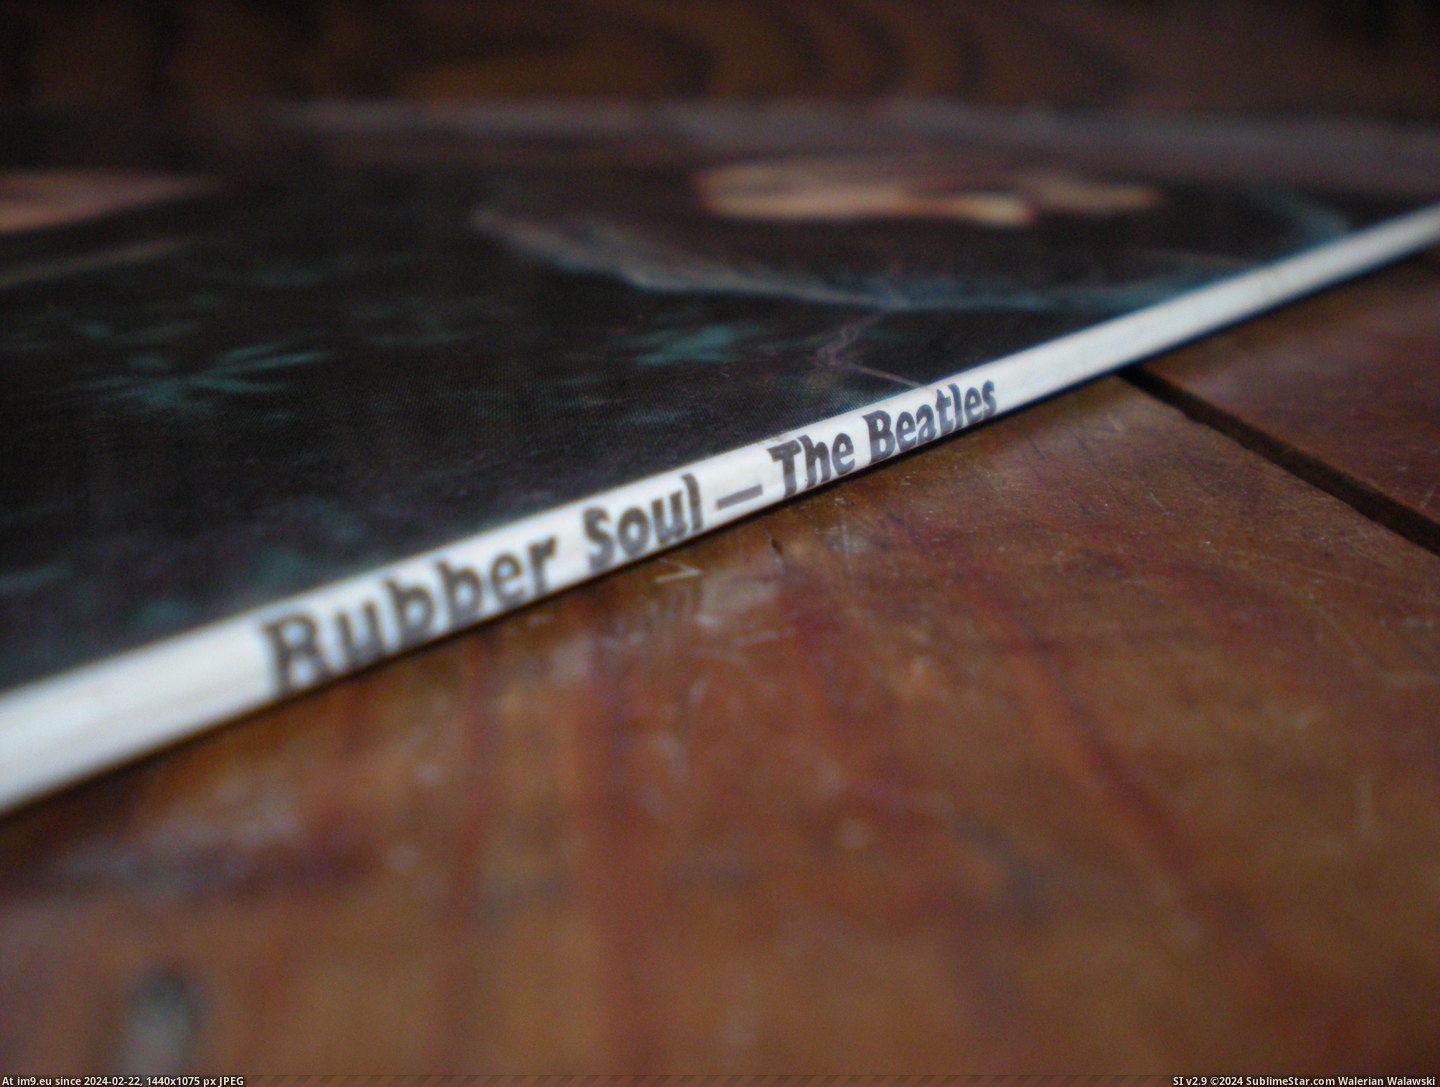  #Rubber  Rubber -4-4 9.1 Pic. (Obraz z album new 1))